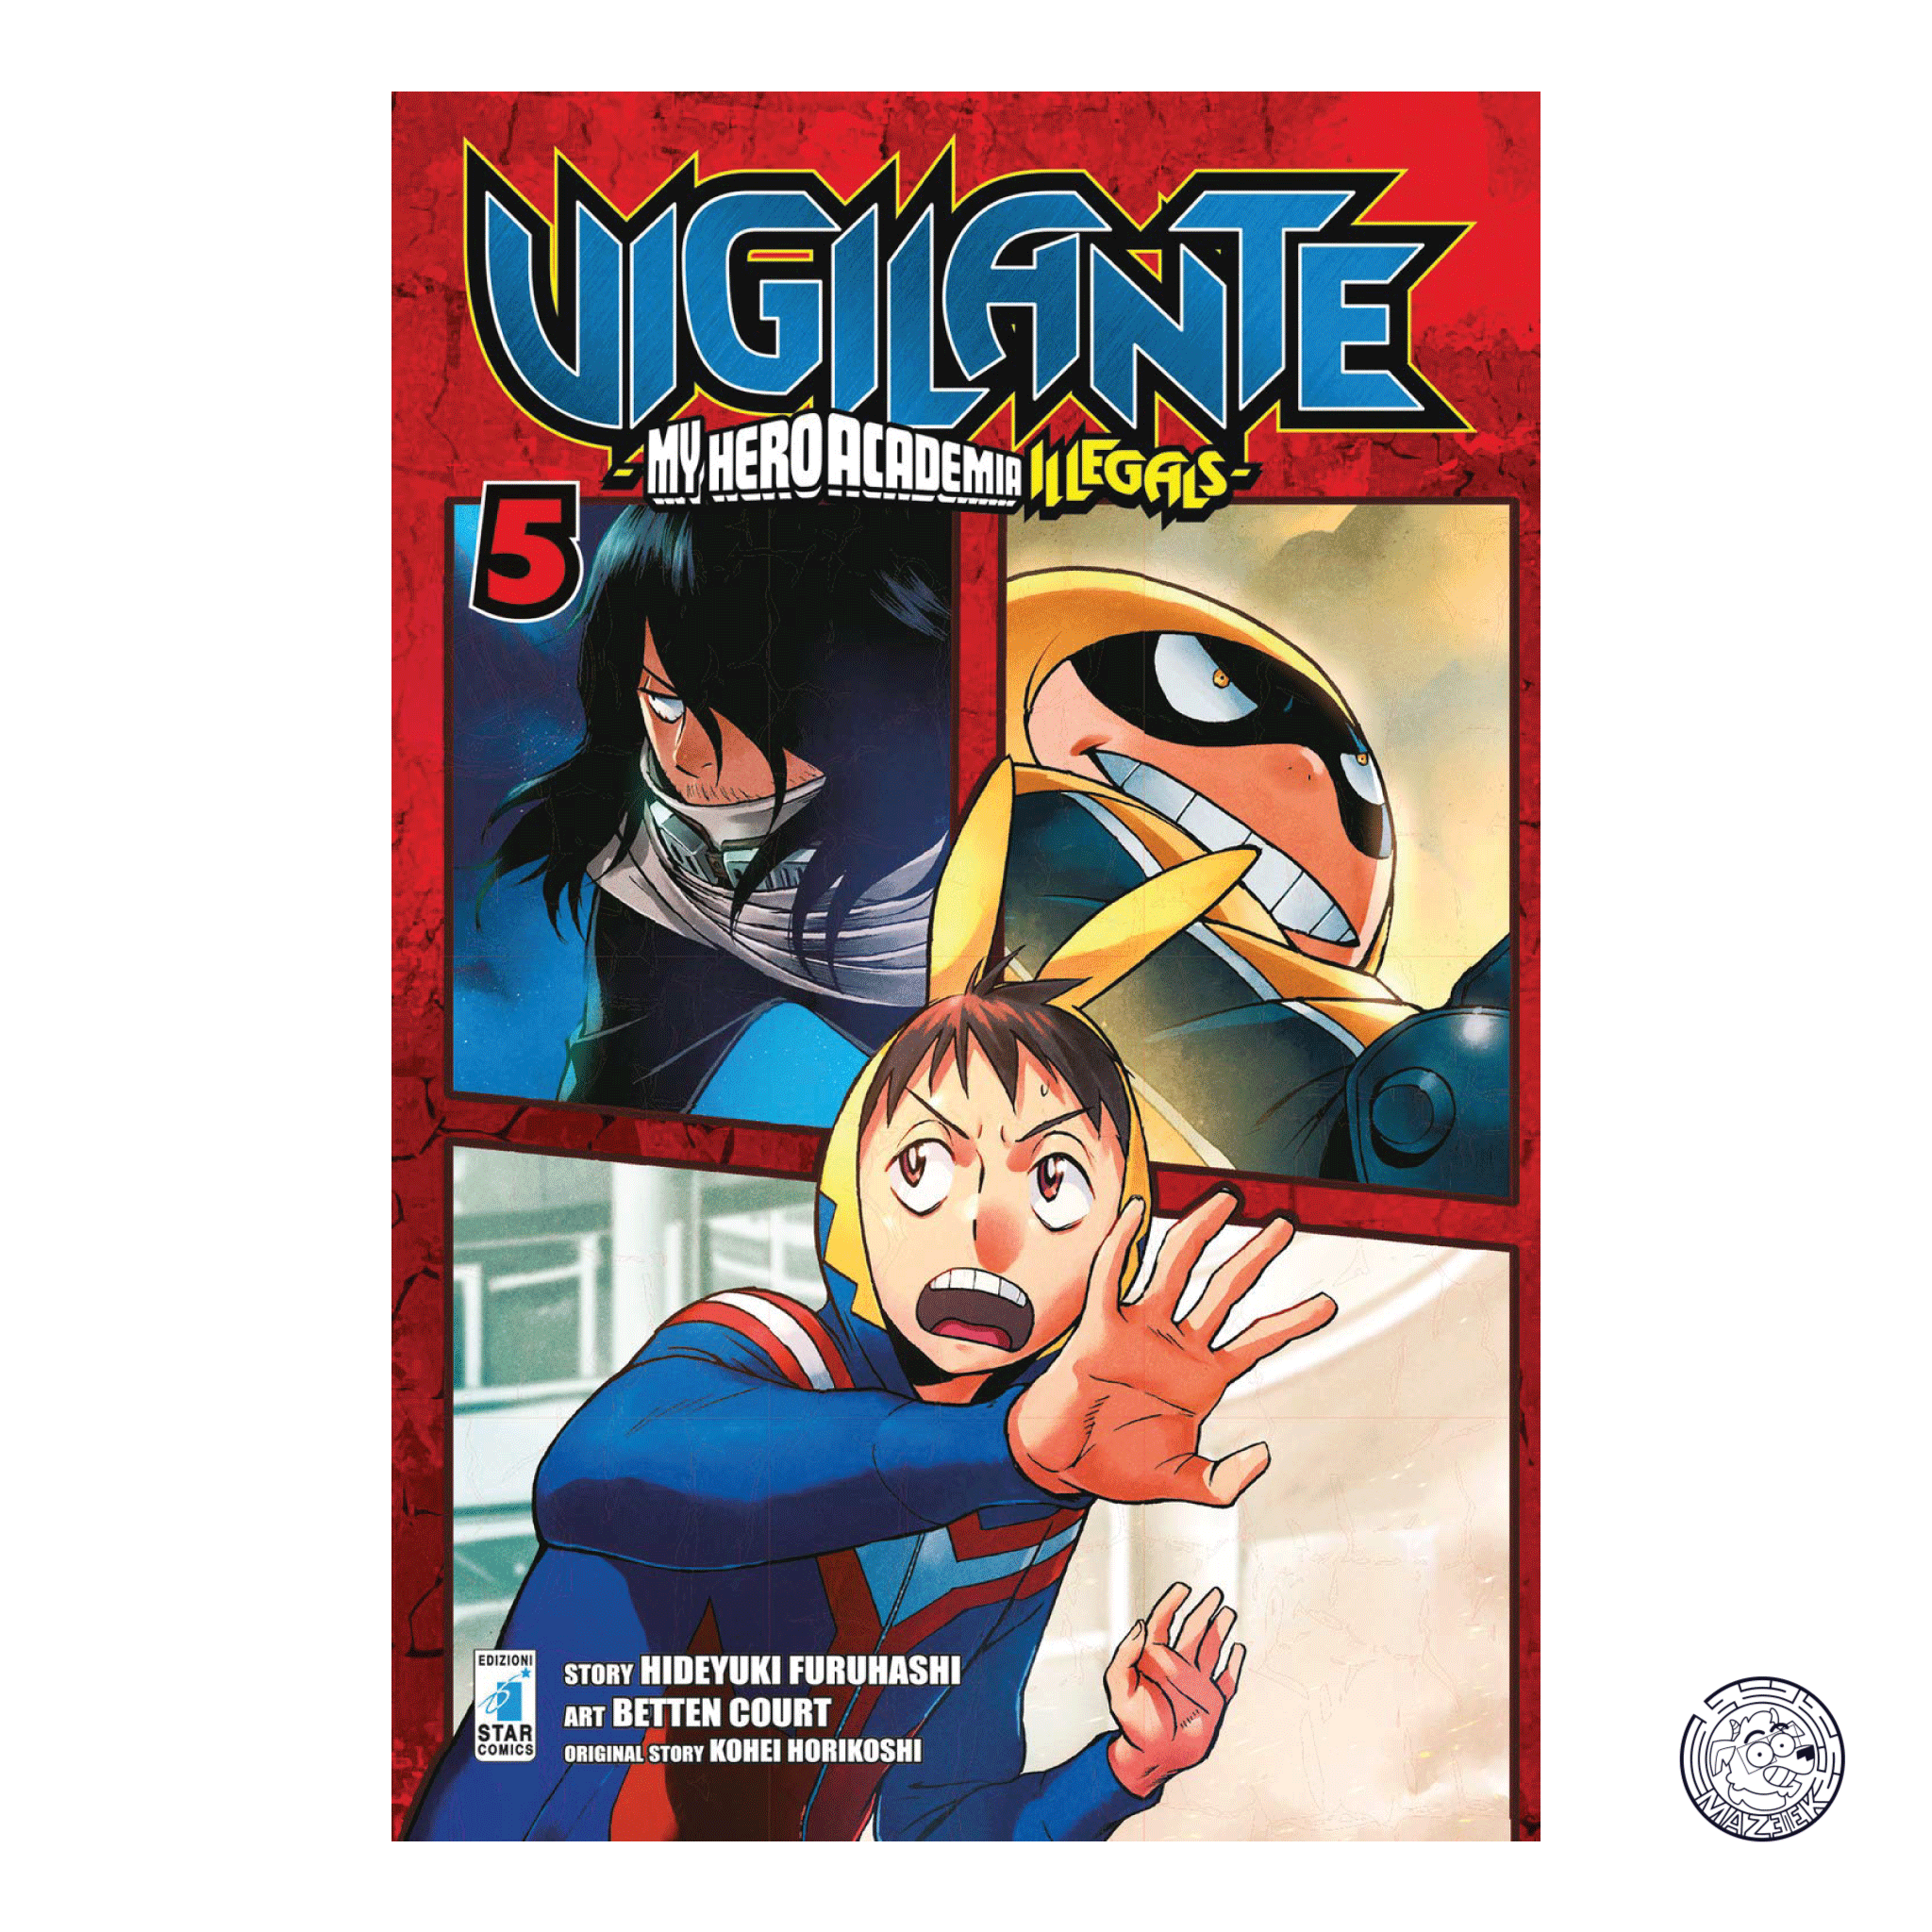 Vigilante: My Hero Academia Illegals 05